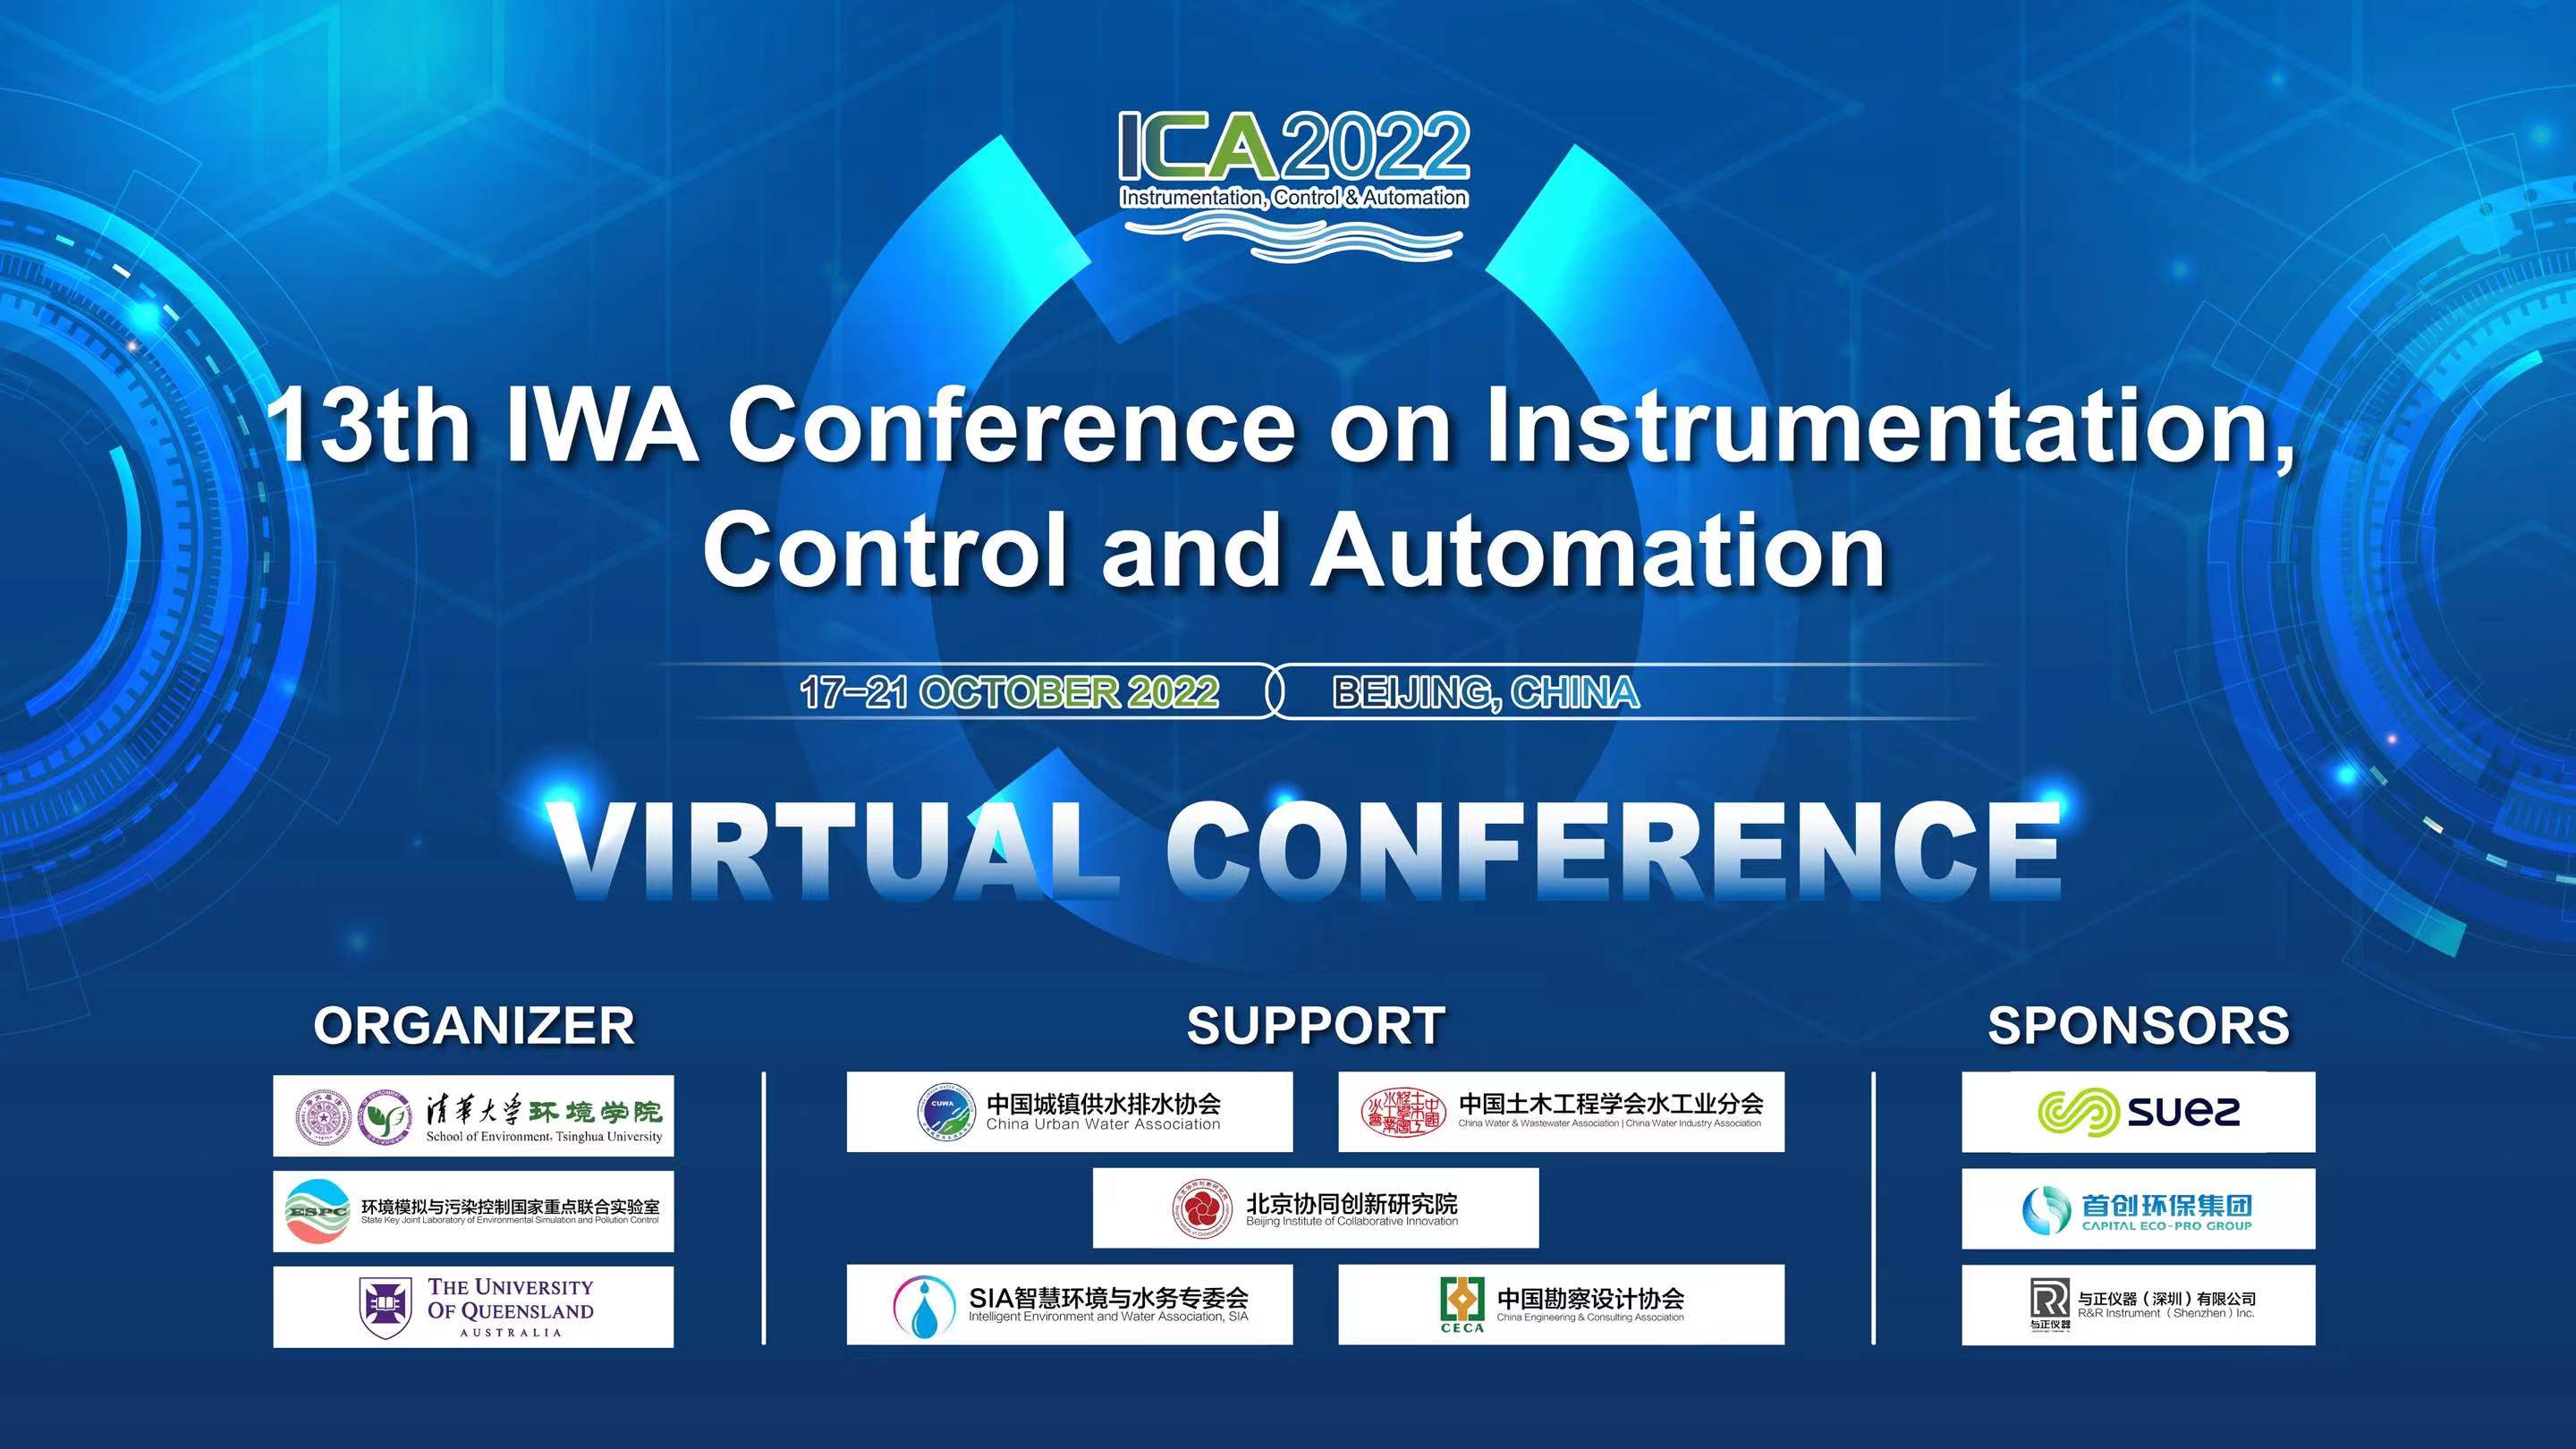 20221021-第13届IWA仪表、控制和自动化大会（ICA2022）成功举办-会议组委会-大会海报.jpg